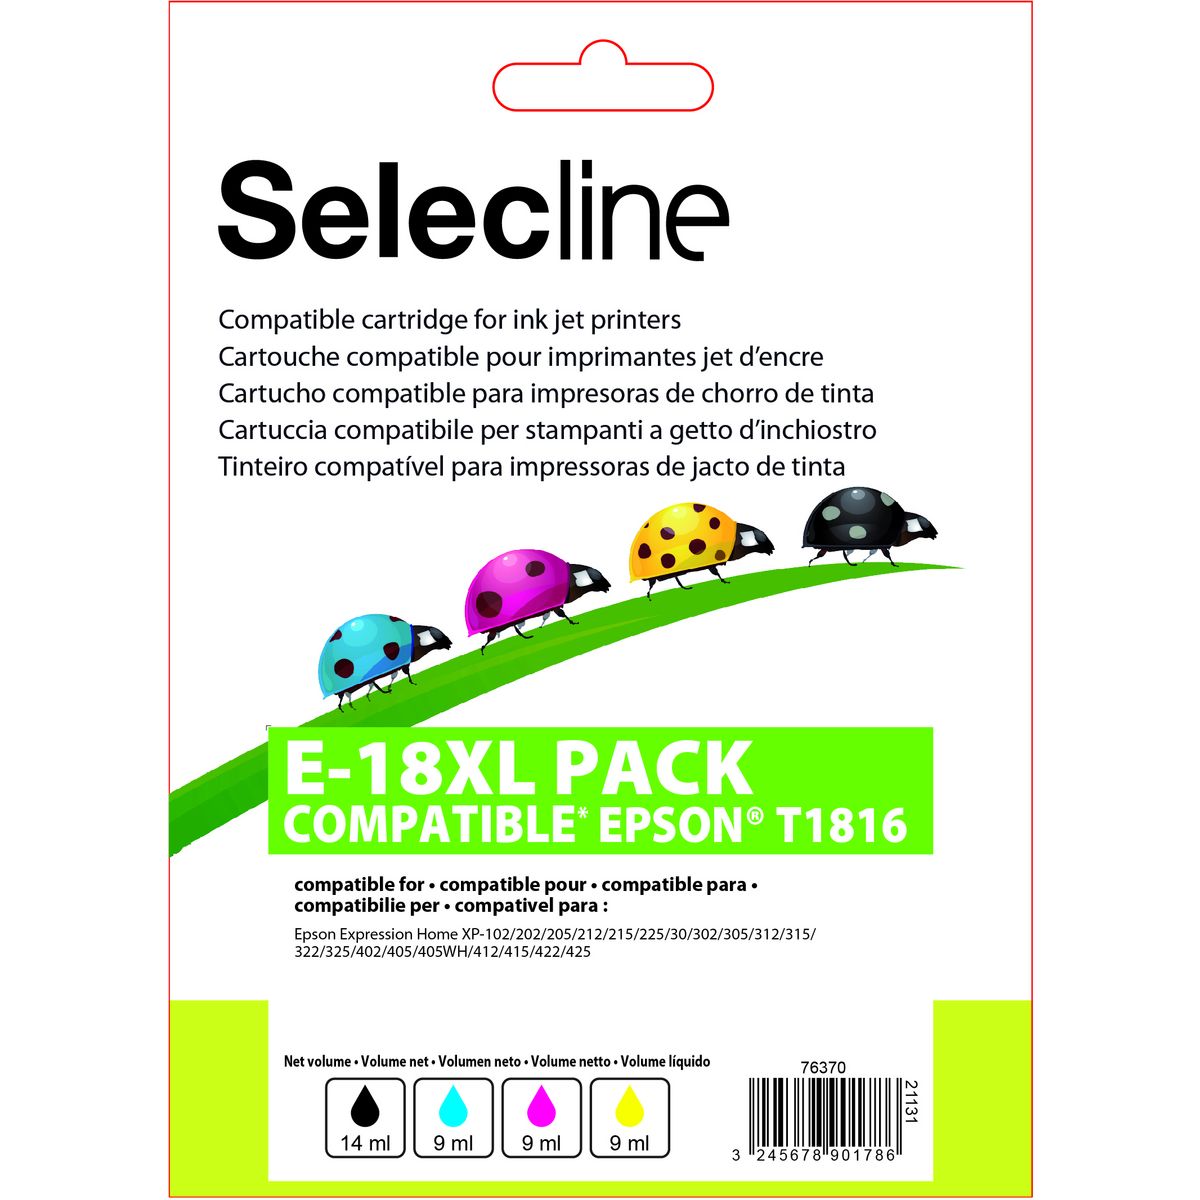 SELECLINE Cartouche 4 Couleurs E-18 XL PACK